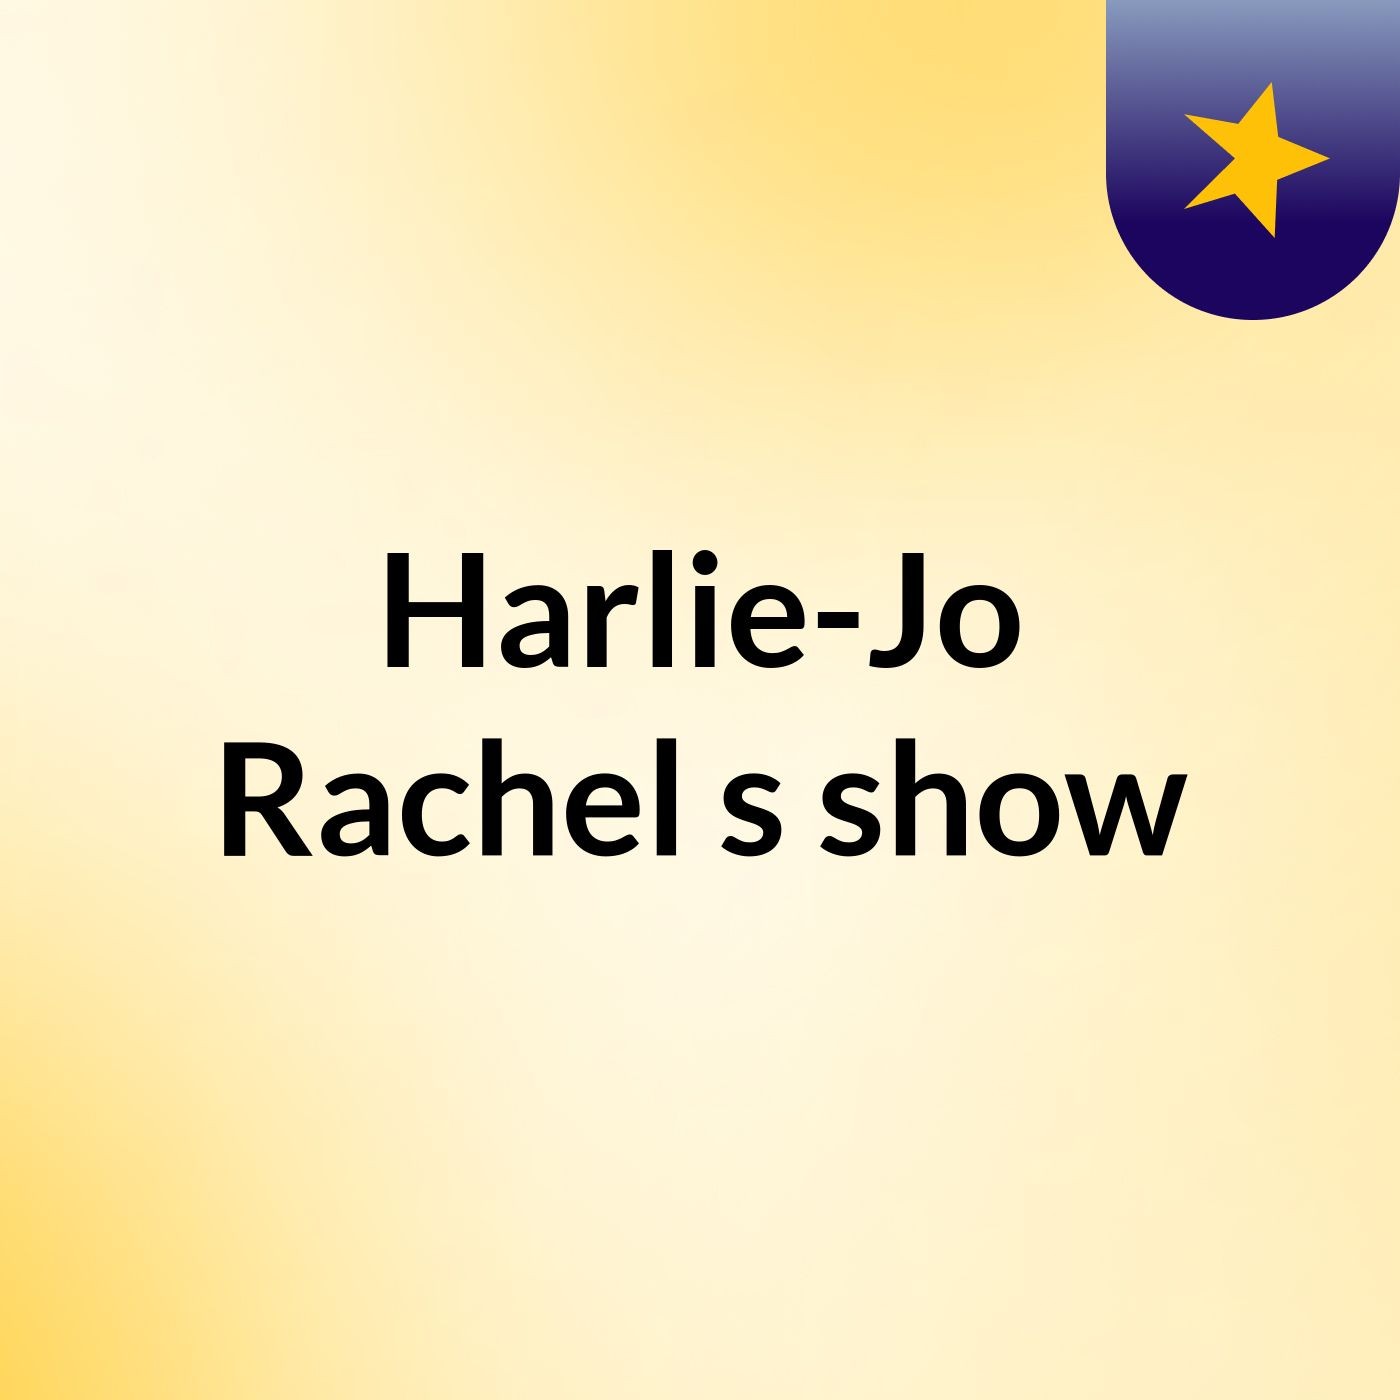 Harlie-Jo Rachel's show